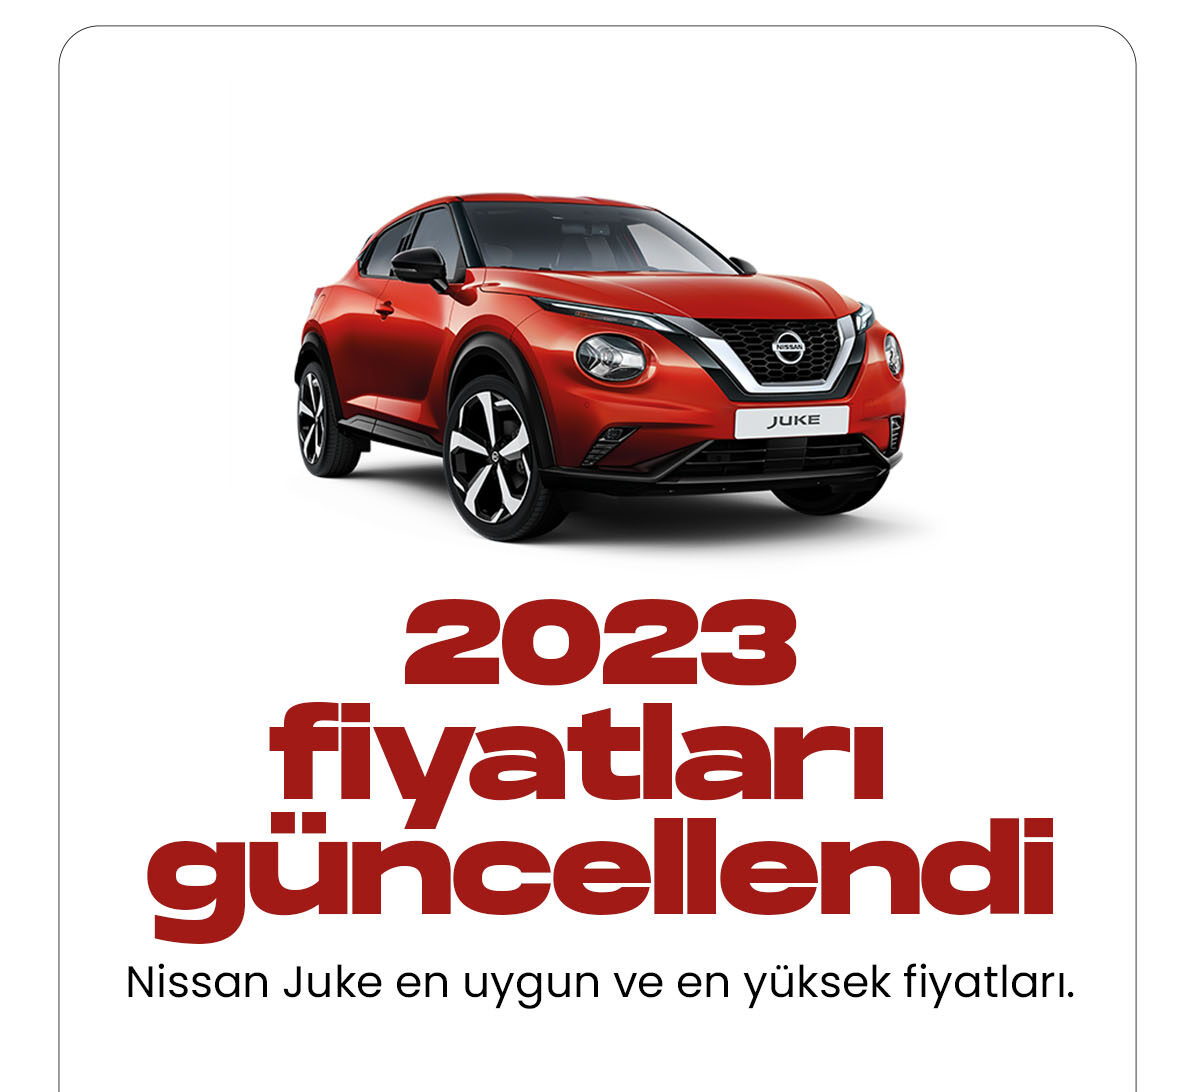 Nissan Juke Ocak fiyat listesi yayımlandı. Japonya merkezli otomobil markası Nissan yeni yıl fiyat listelerini güncelledi. Araç sürücülerine konforlu bir sürüş sağlayan Nissan araçların yeni yıl fiyatları adeta cep yakıyor.